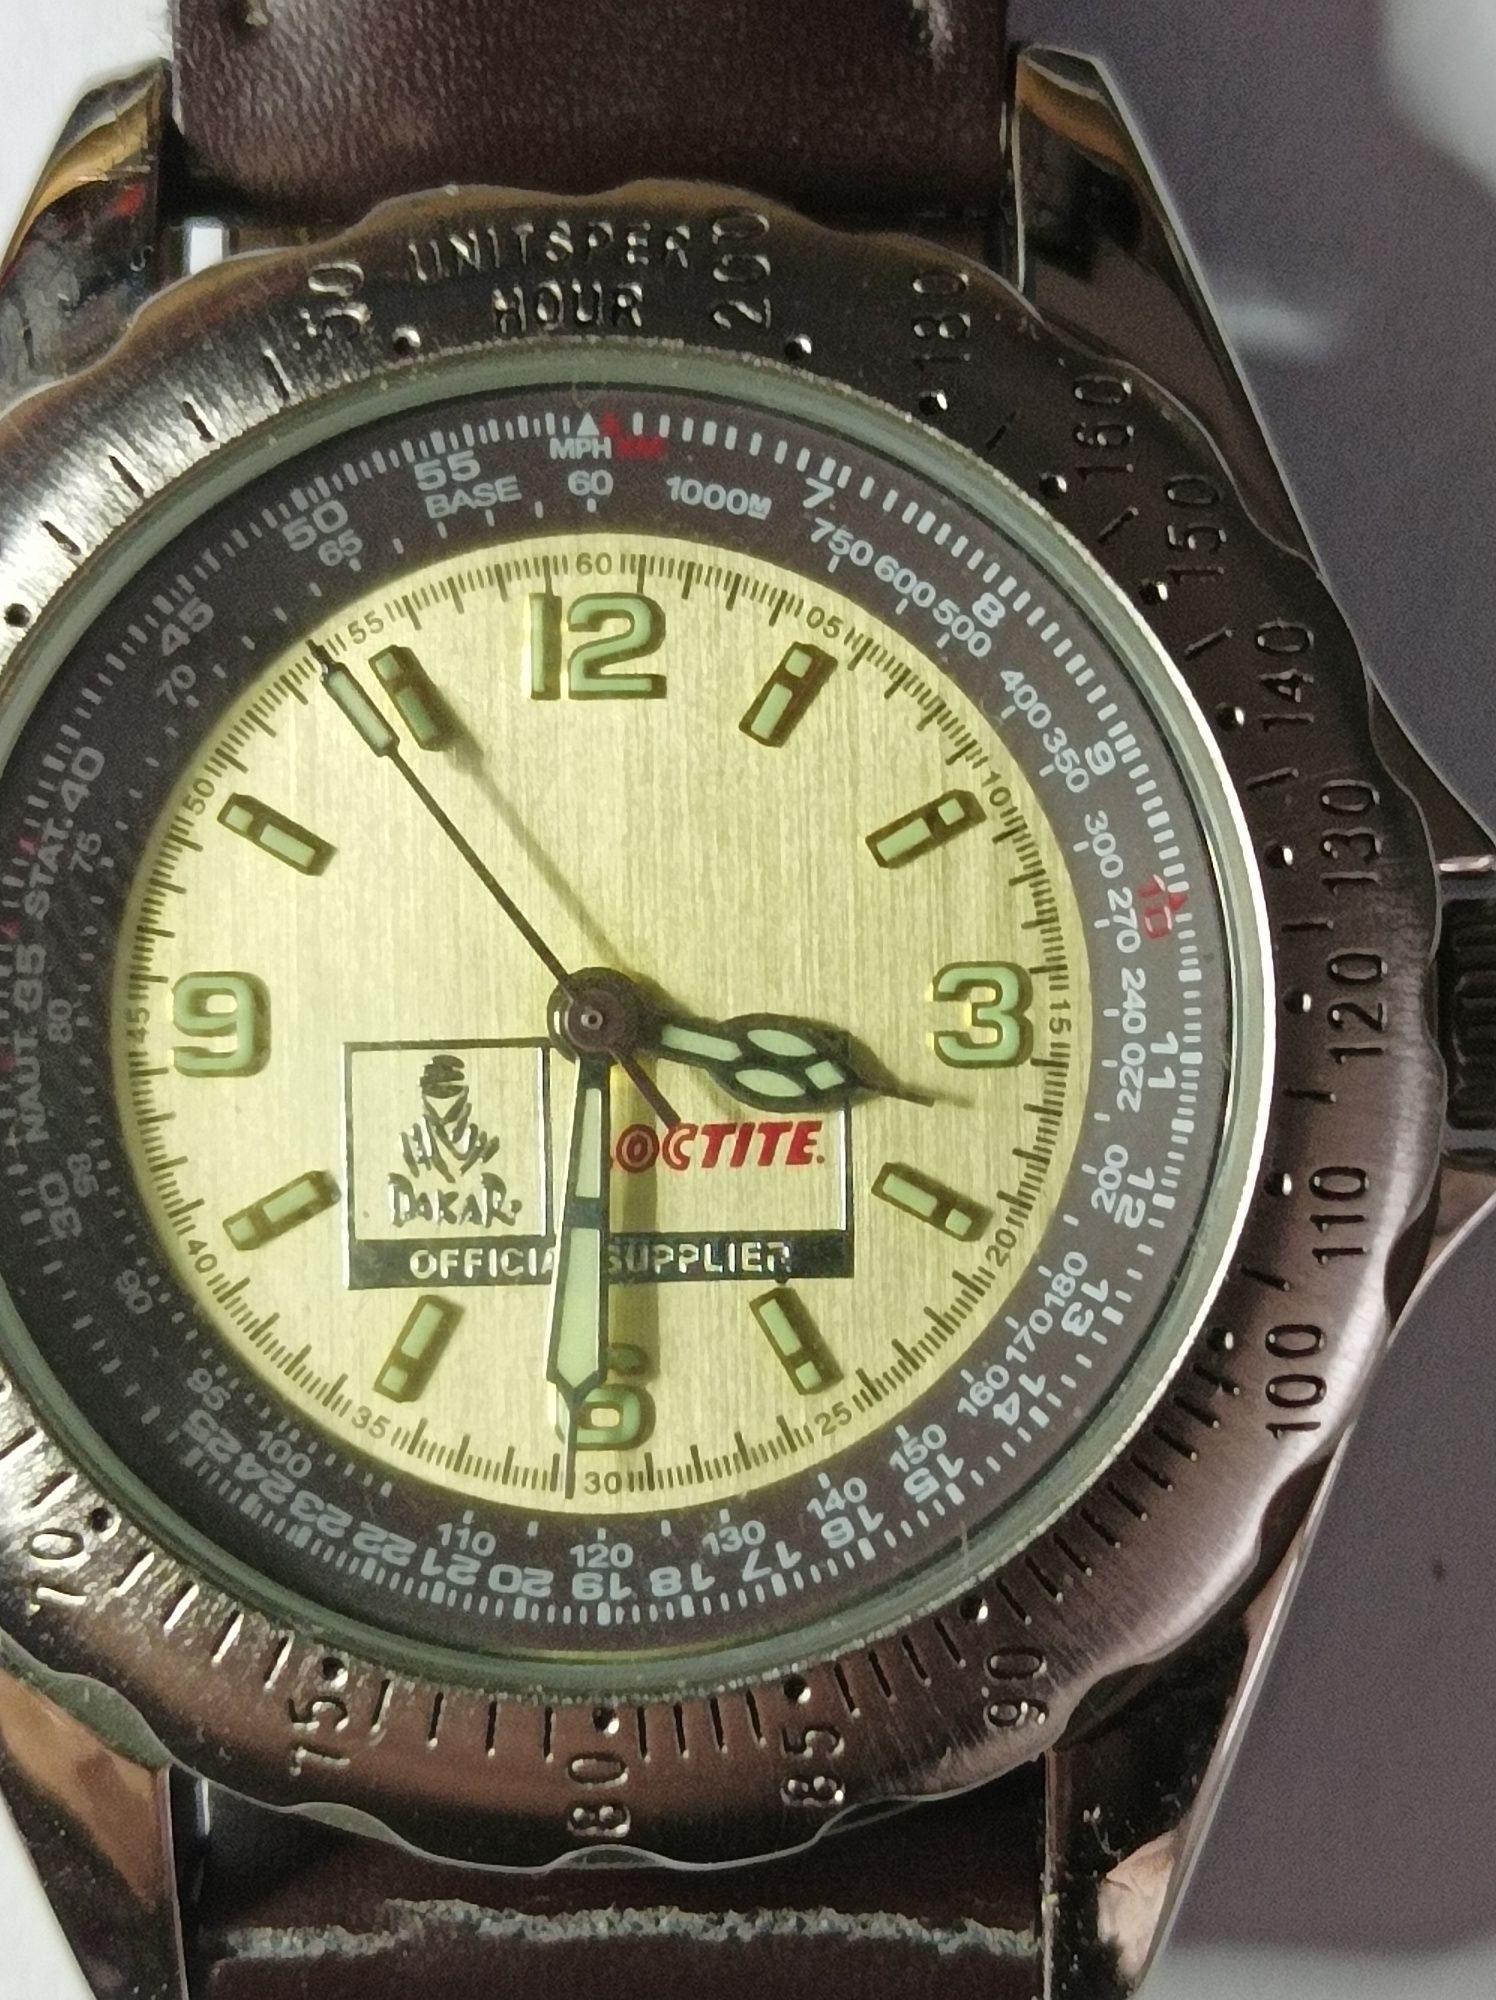 Relógio Dakar com caixa original.